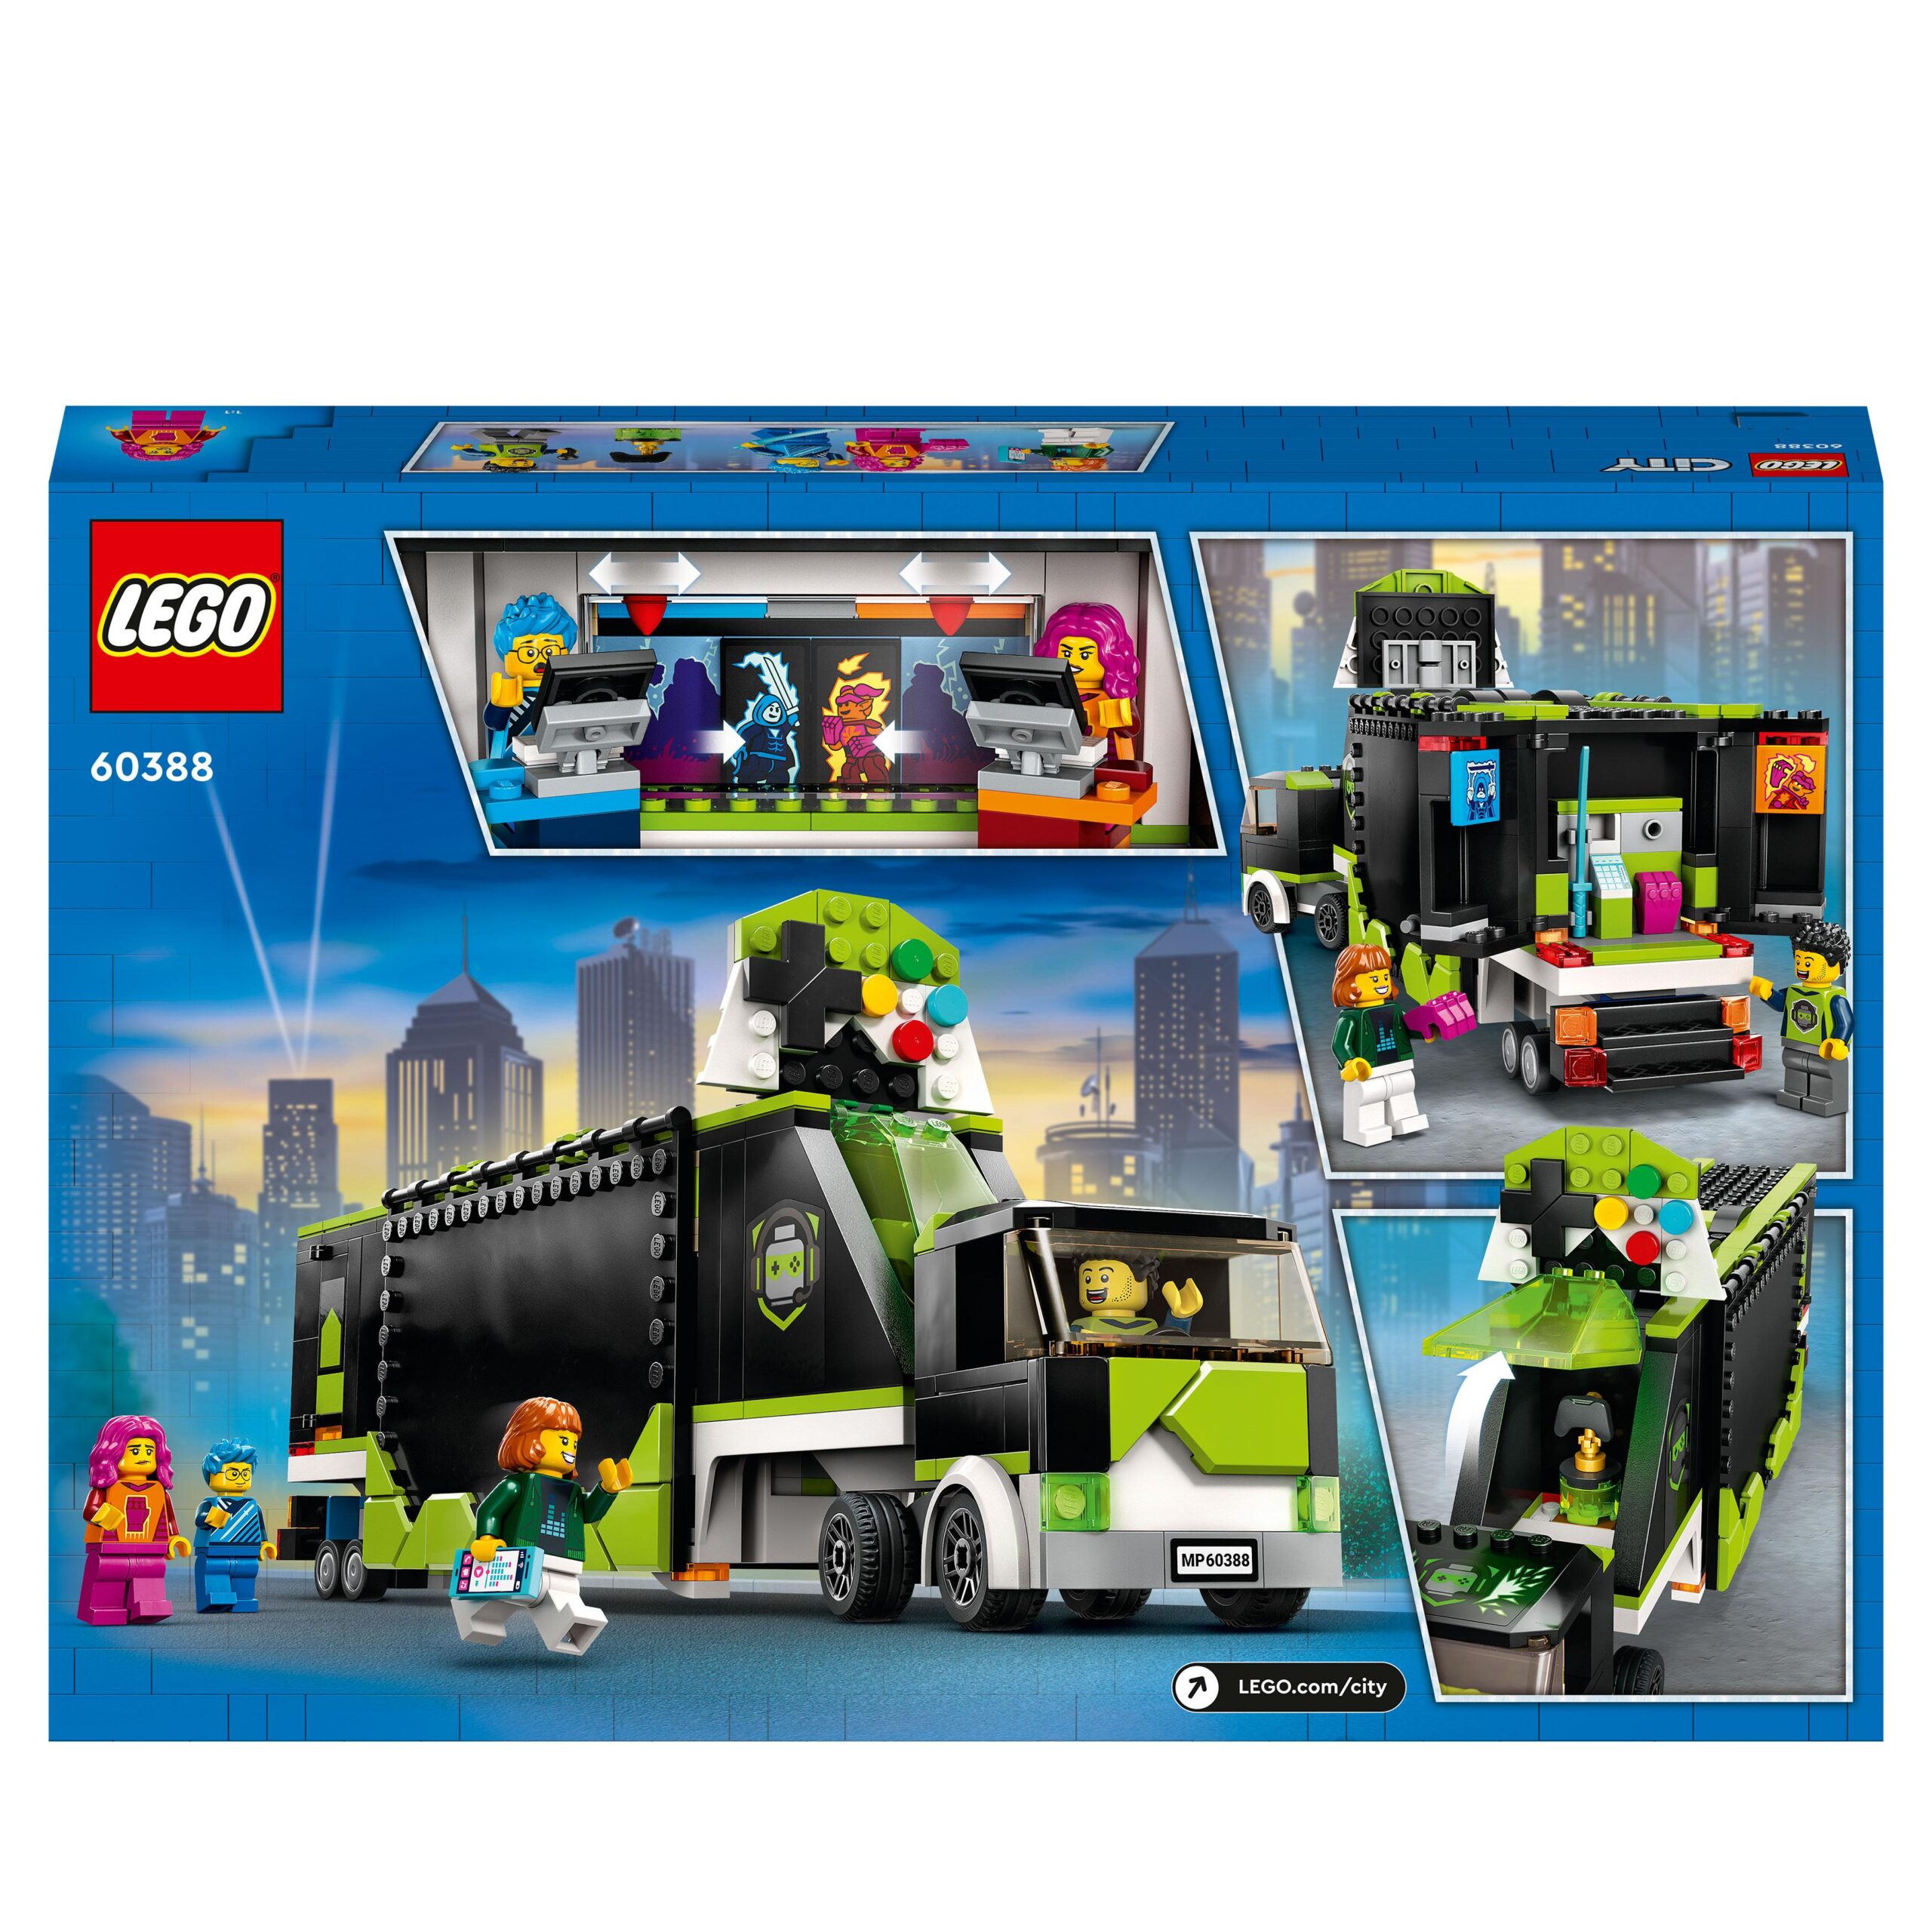 Lego city 60388 camion dei tornei di gioco, veicolo giocattolo per i fan dei videogiochi e di esport, idee regalo per bambini - LEGO CITY